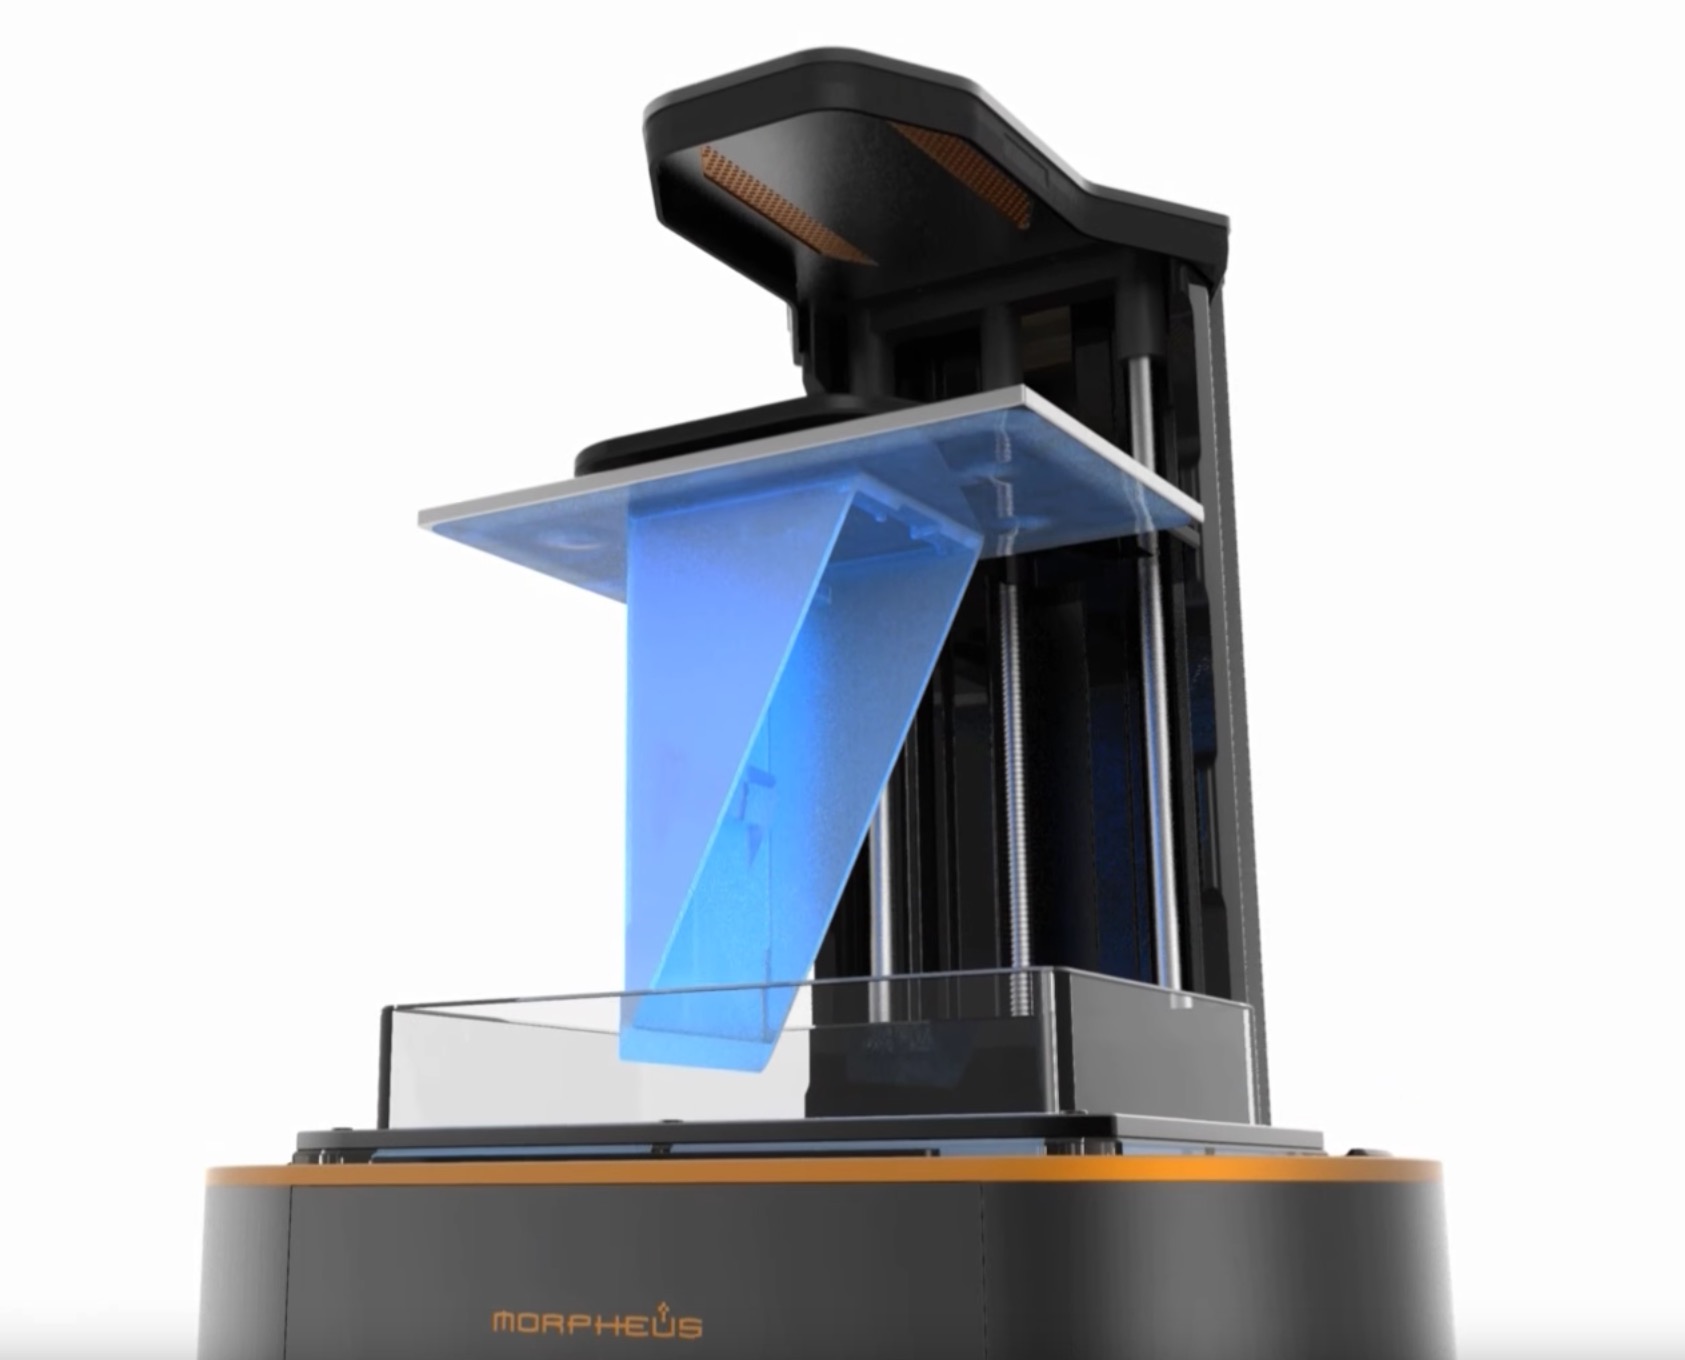  The Morpheus Delta resin-based 3D printer 